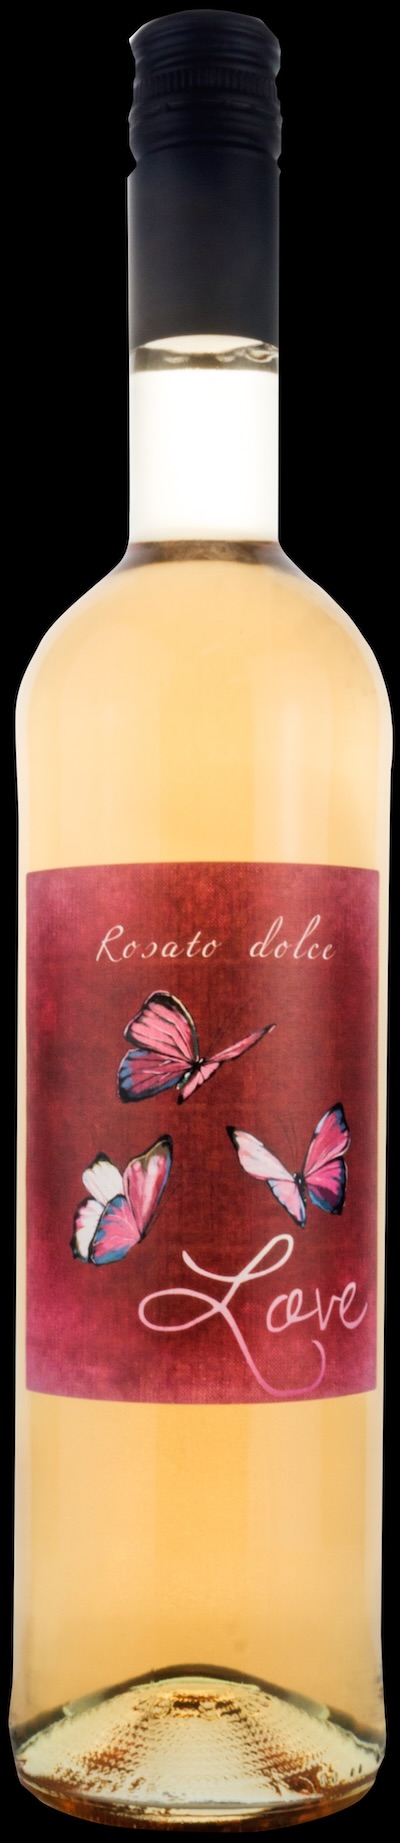 Rosato dolce Vino di Italia - Biowein